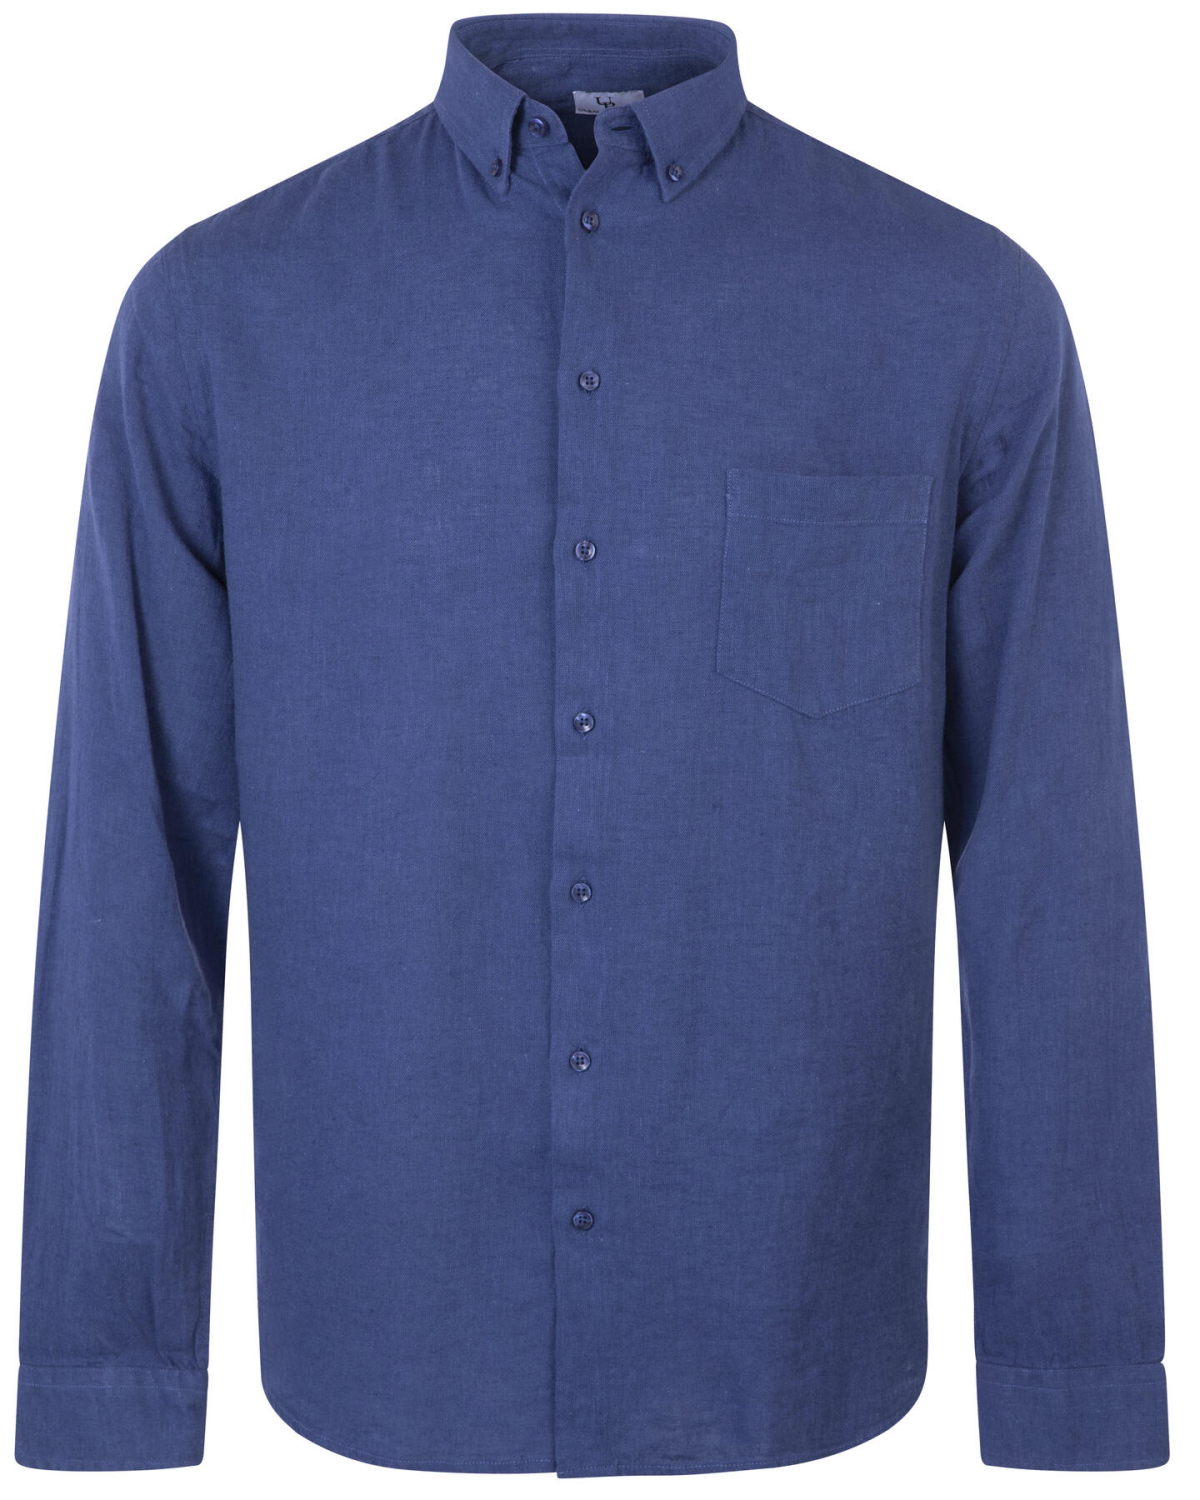 Thad Shirt Blue - Urban Pioneers